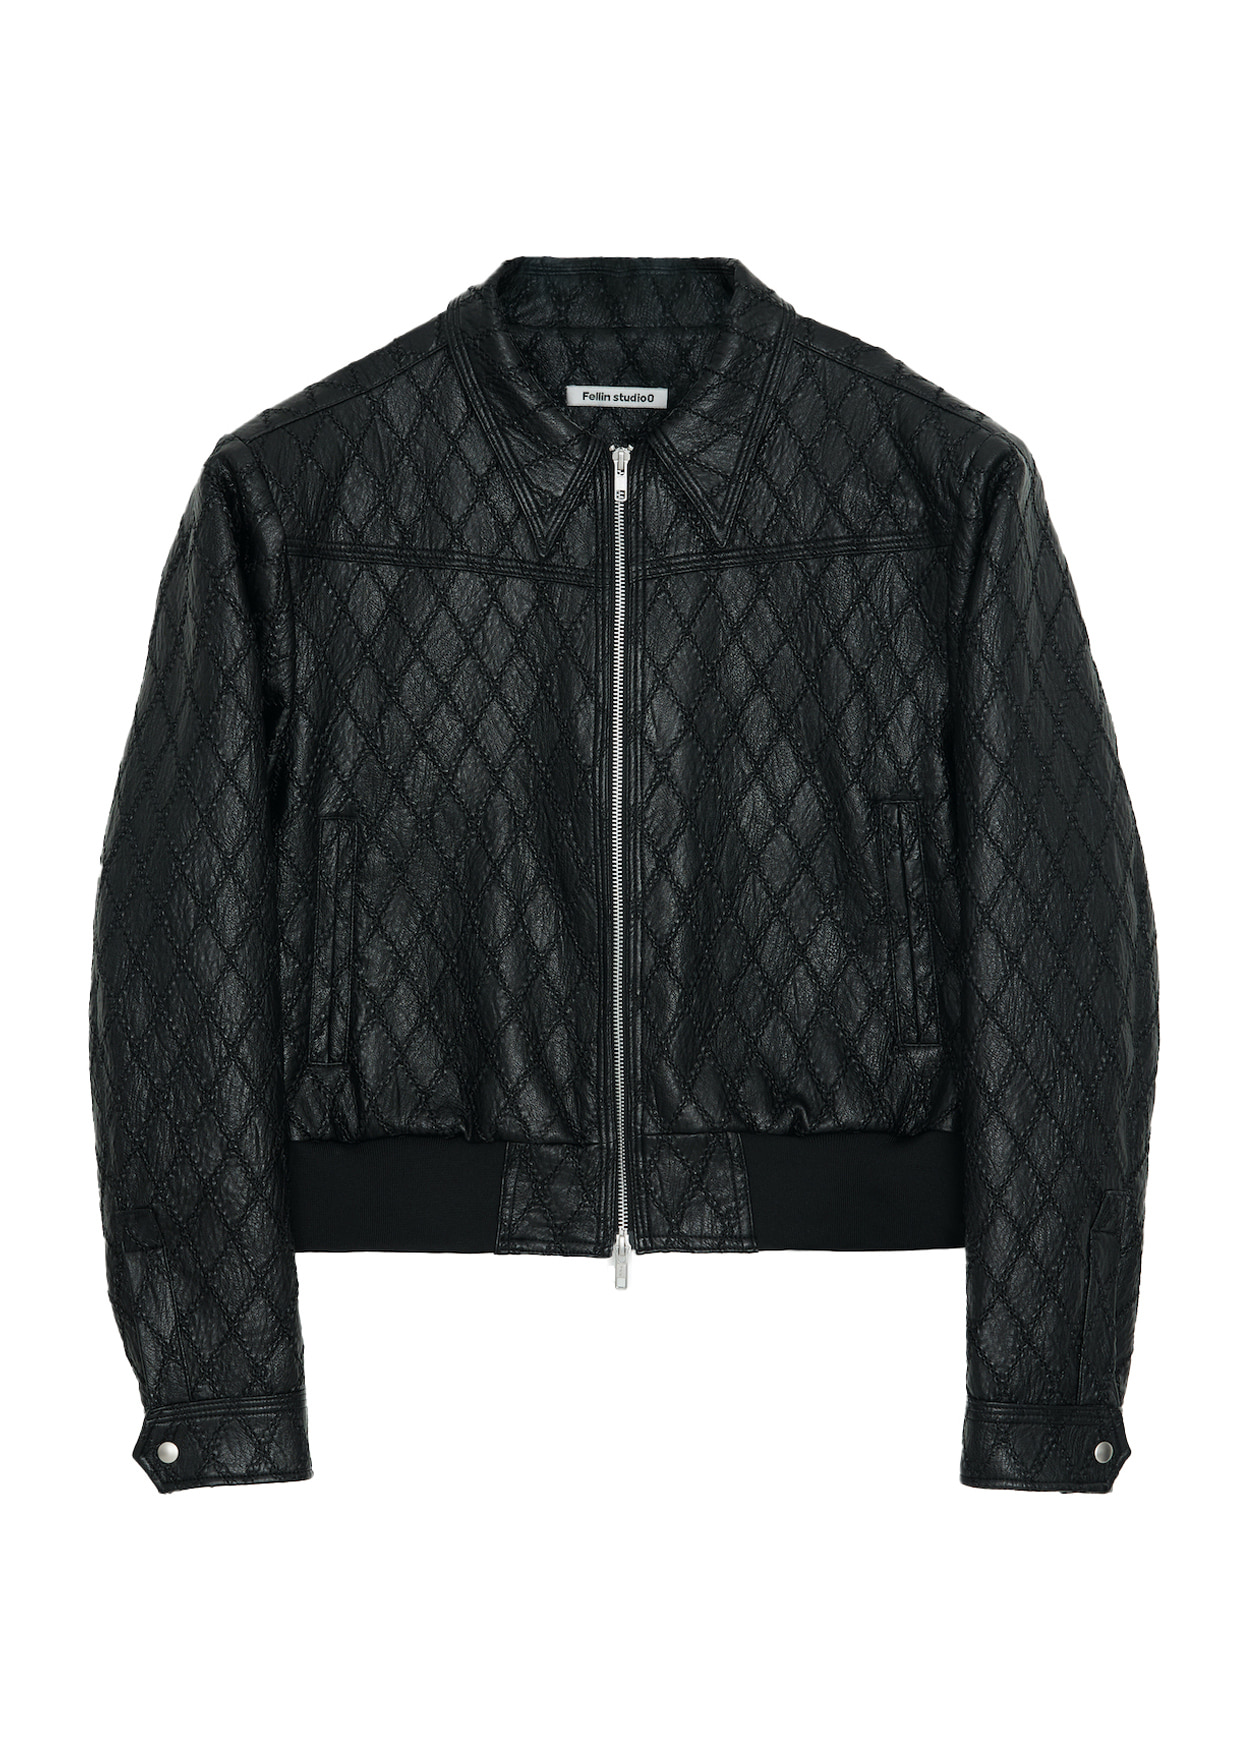 Net Leather Jacket Black